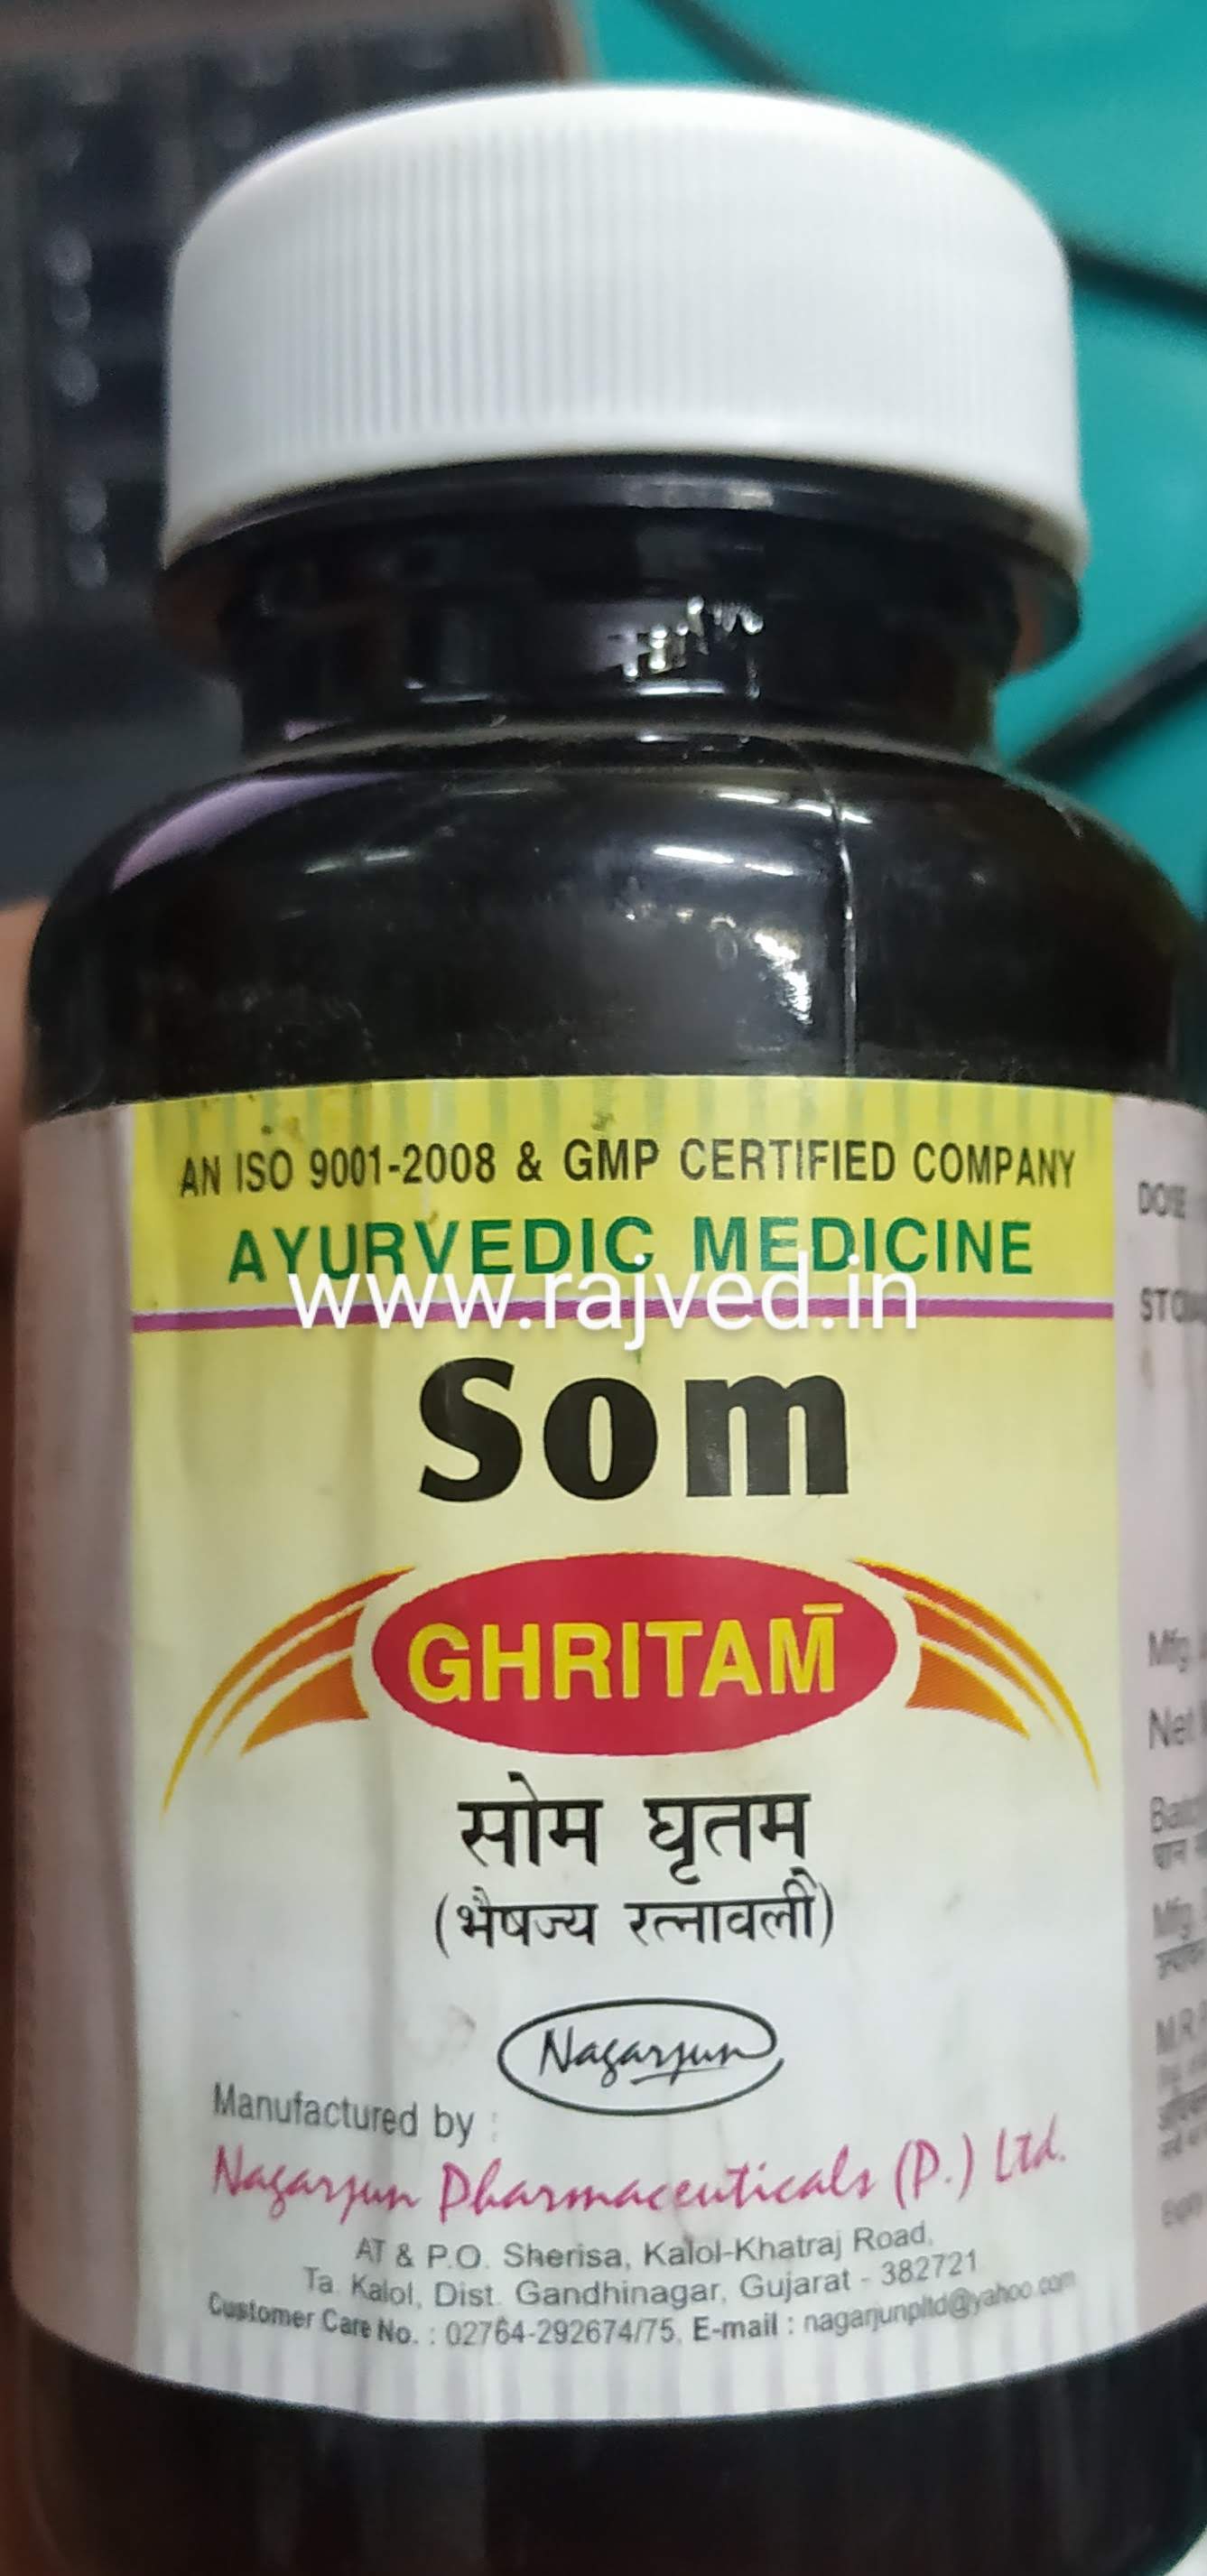 somraji ghritam 100 gm upto 20% off Nagarjun Pharma Gujarat